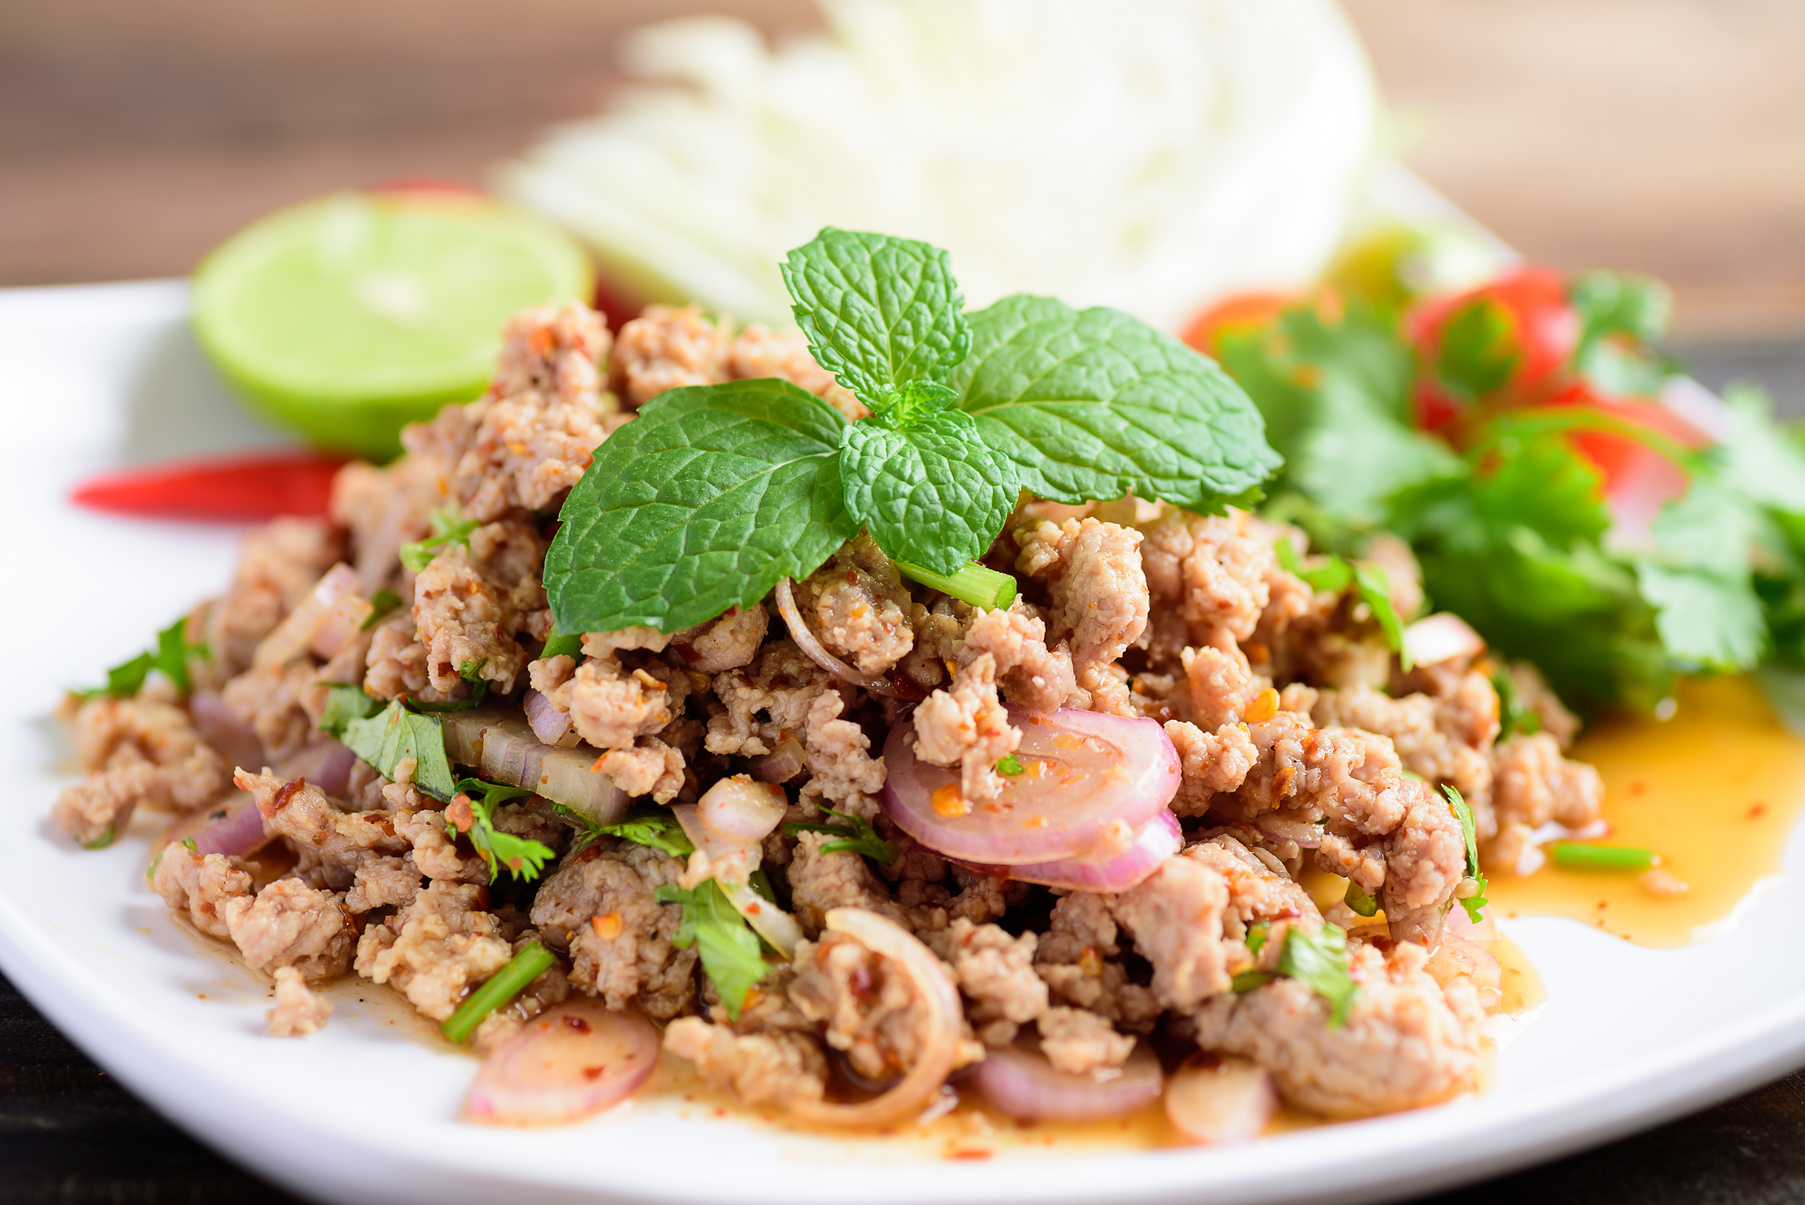 Thai food, spicy minced pork salad (Larb Moo)